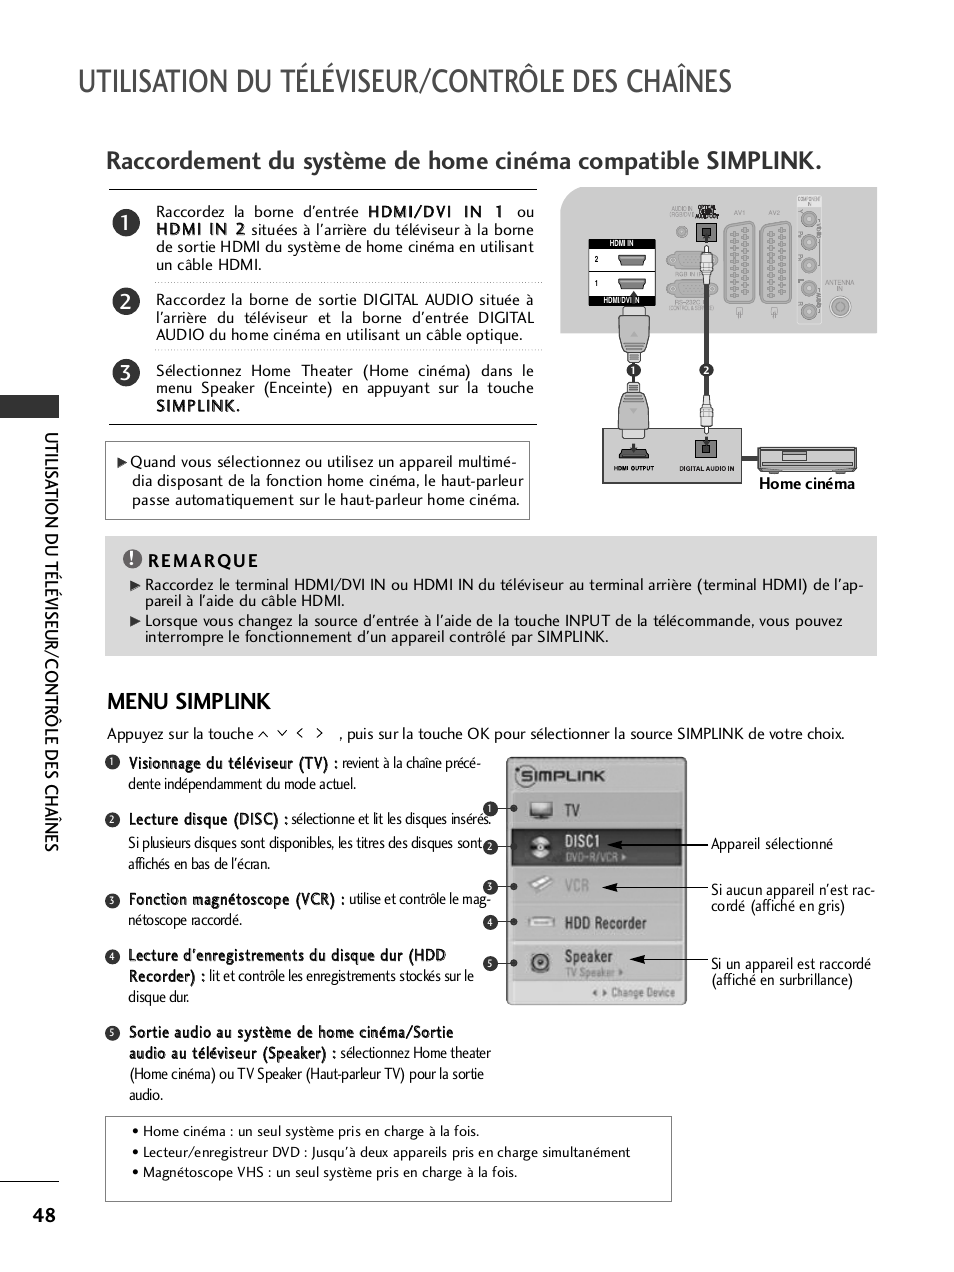 Utilisation du téléviseur/contrôle des chaînes, Menu simplink | LG 50PQ6000 Manuel d'utilisation | Page 50 / 124